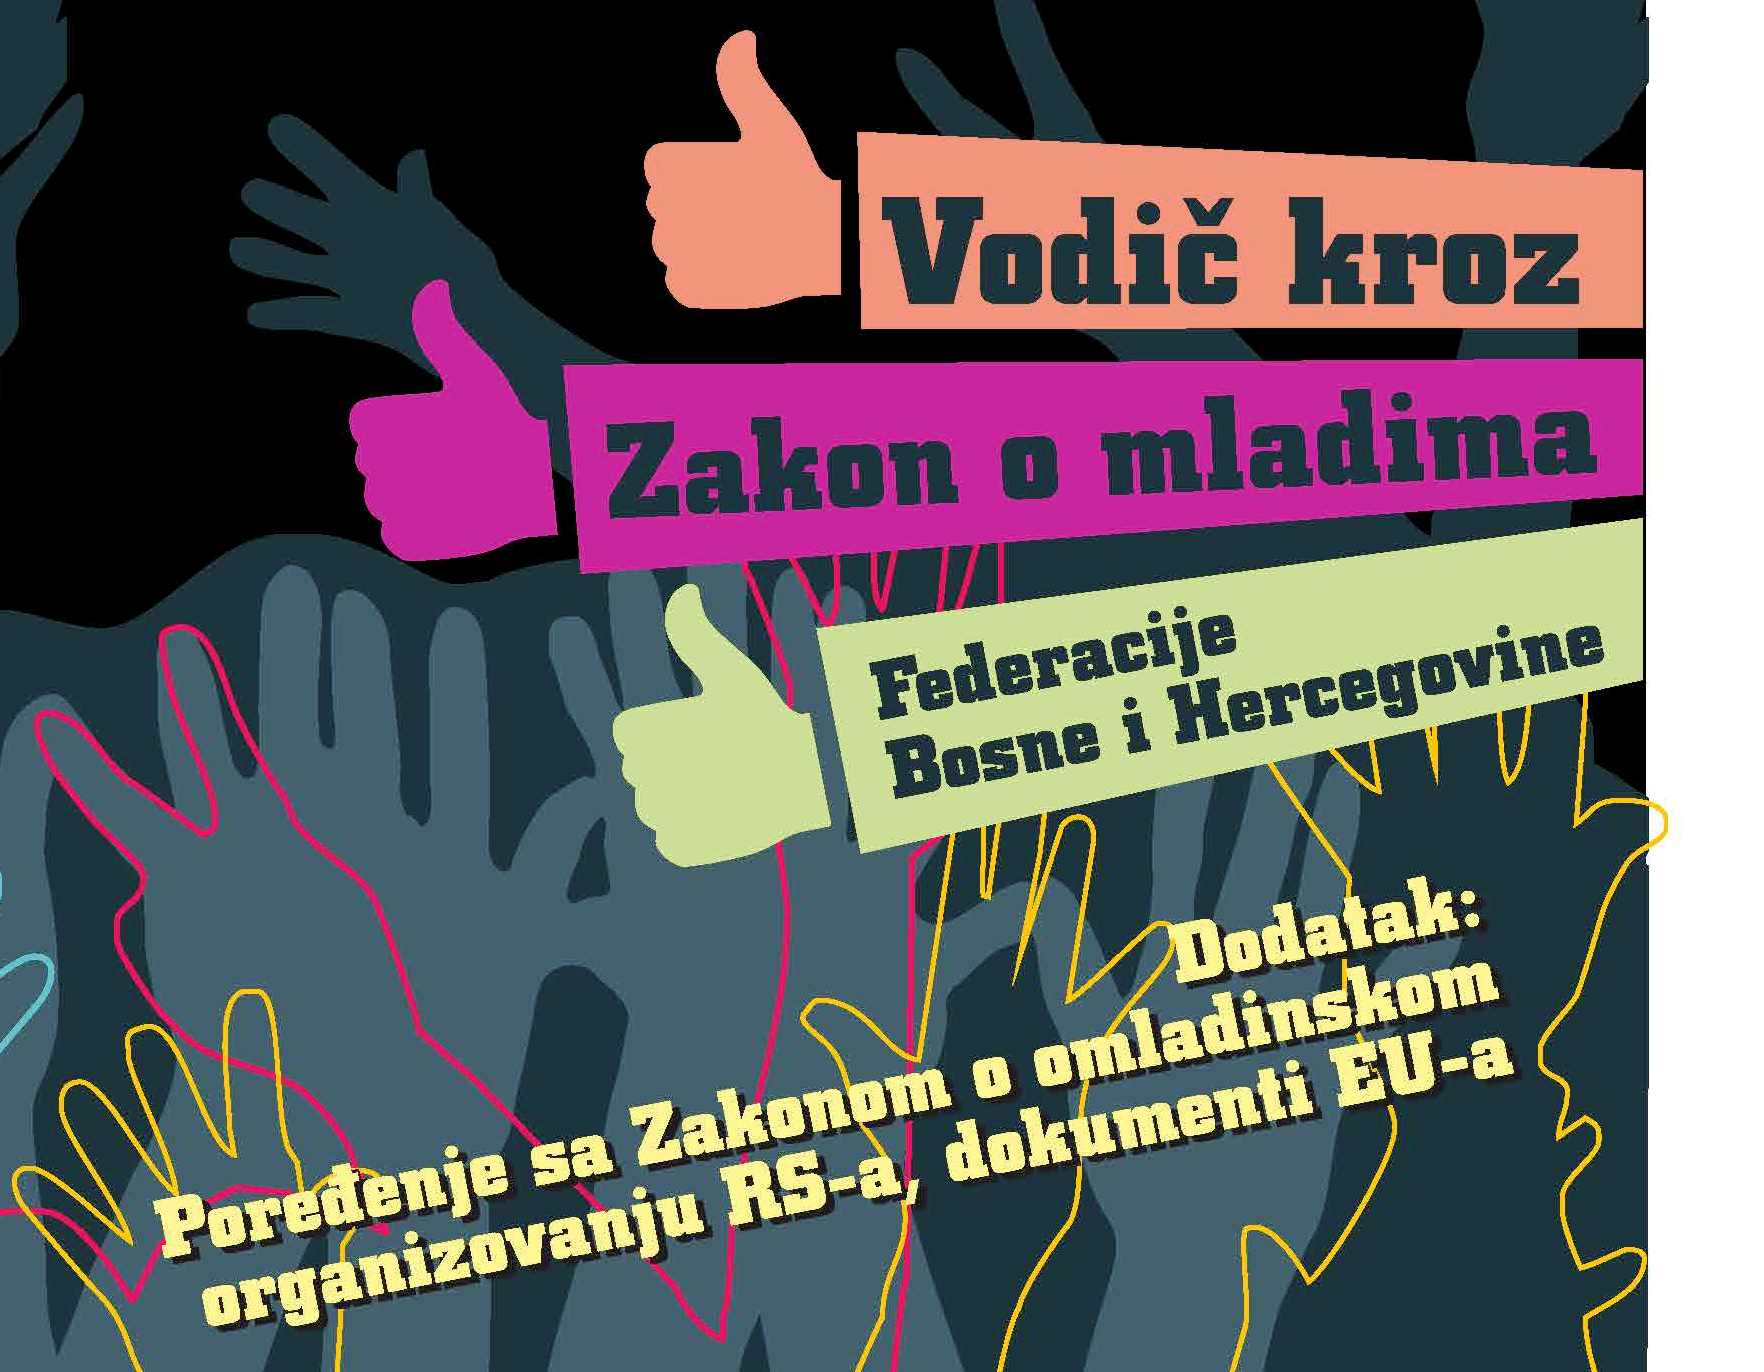 Vodi&#269; kroz Zakon o mladima Federacije Bosne i Hercegovine, Dodatak: Pore&#273;enje sa Zakonom o omladinskom organizovanju RS-a, dokumenti EU-a